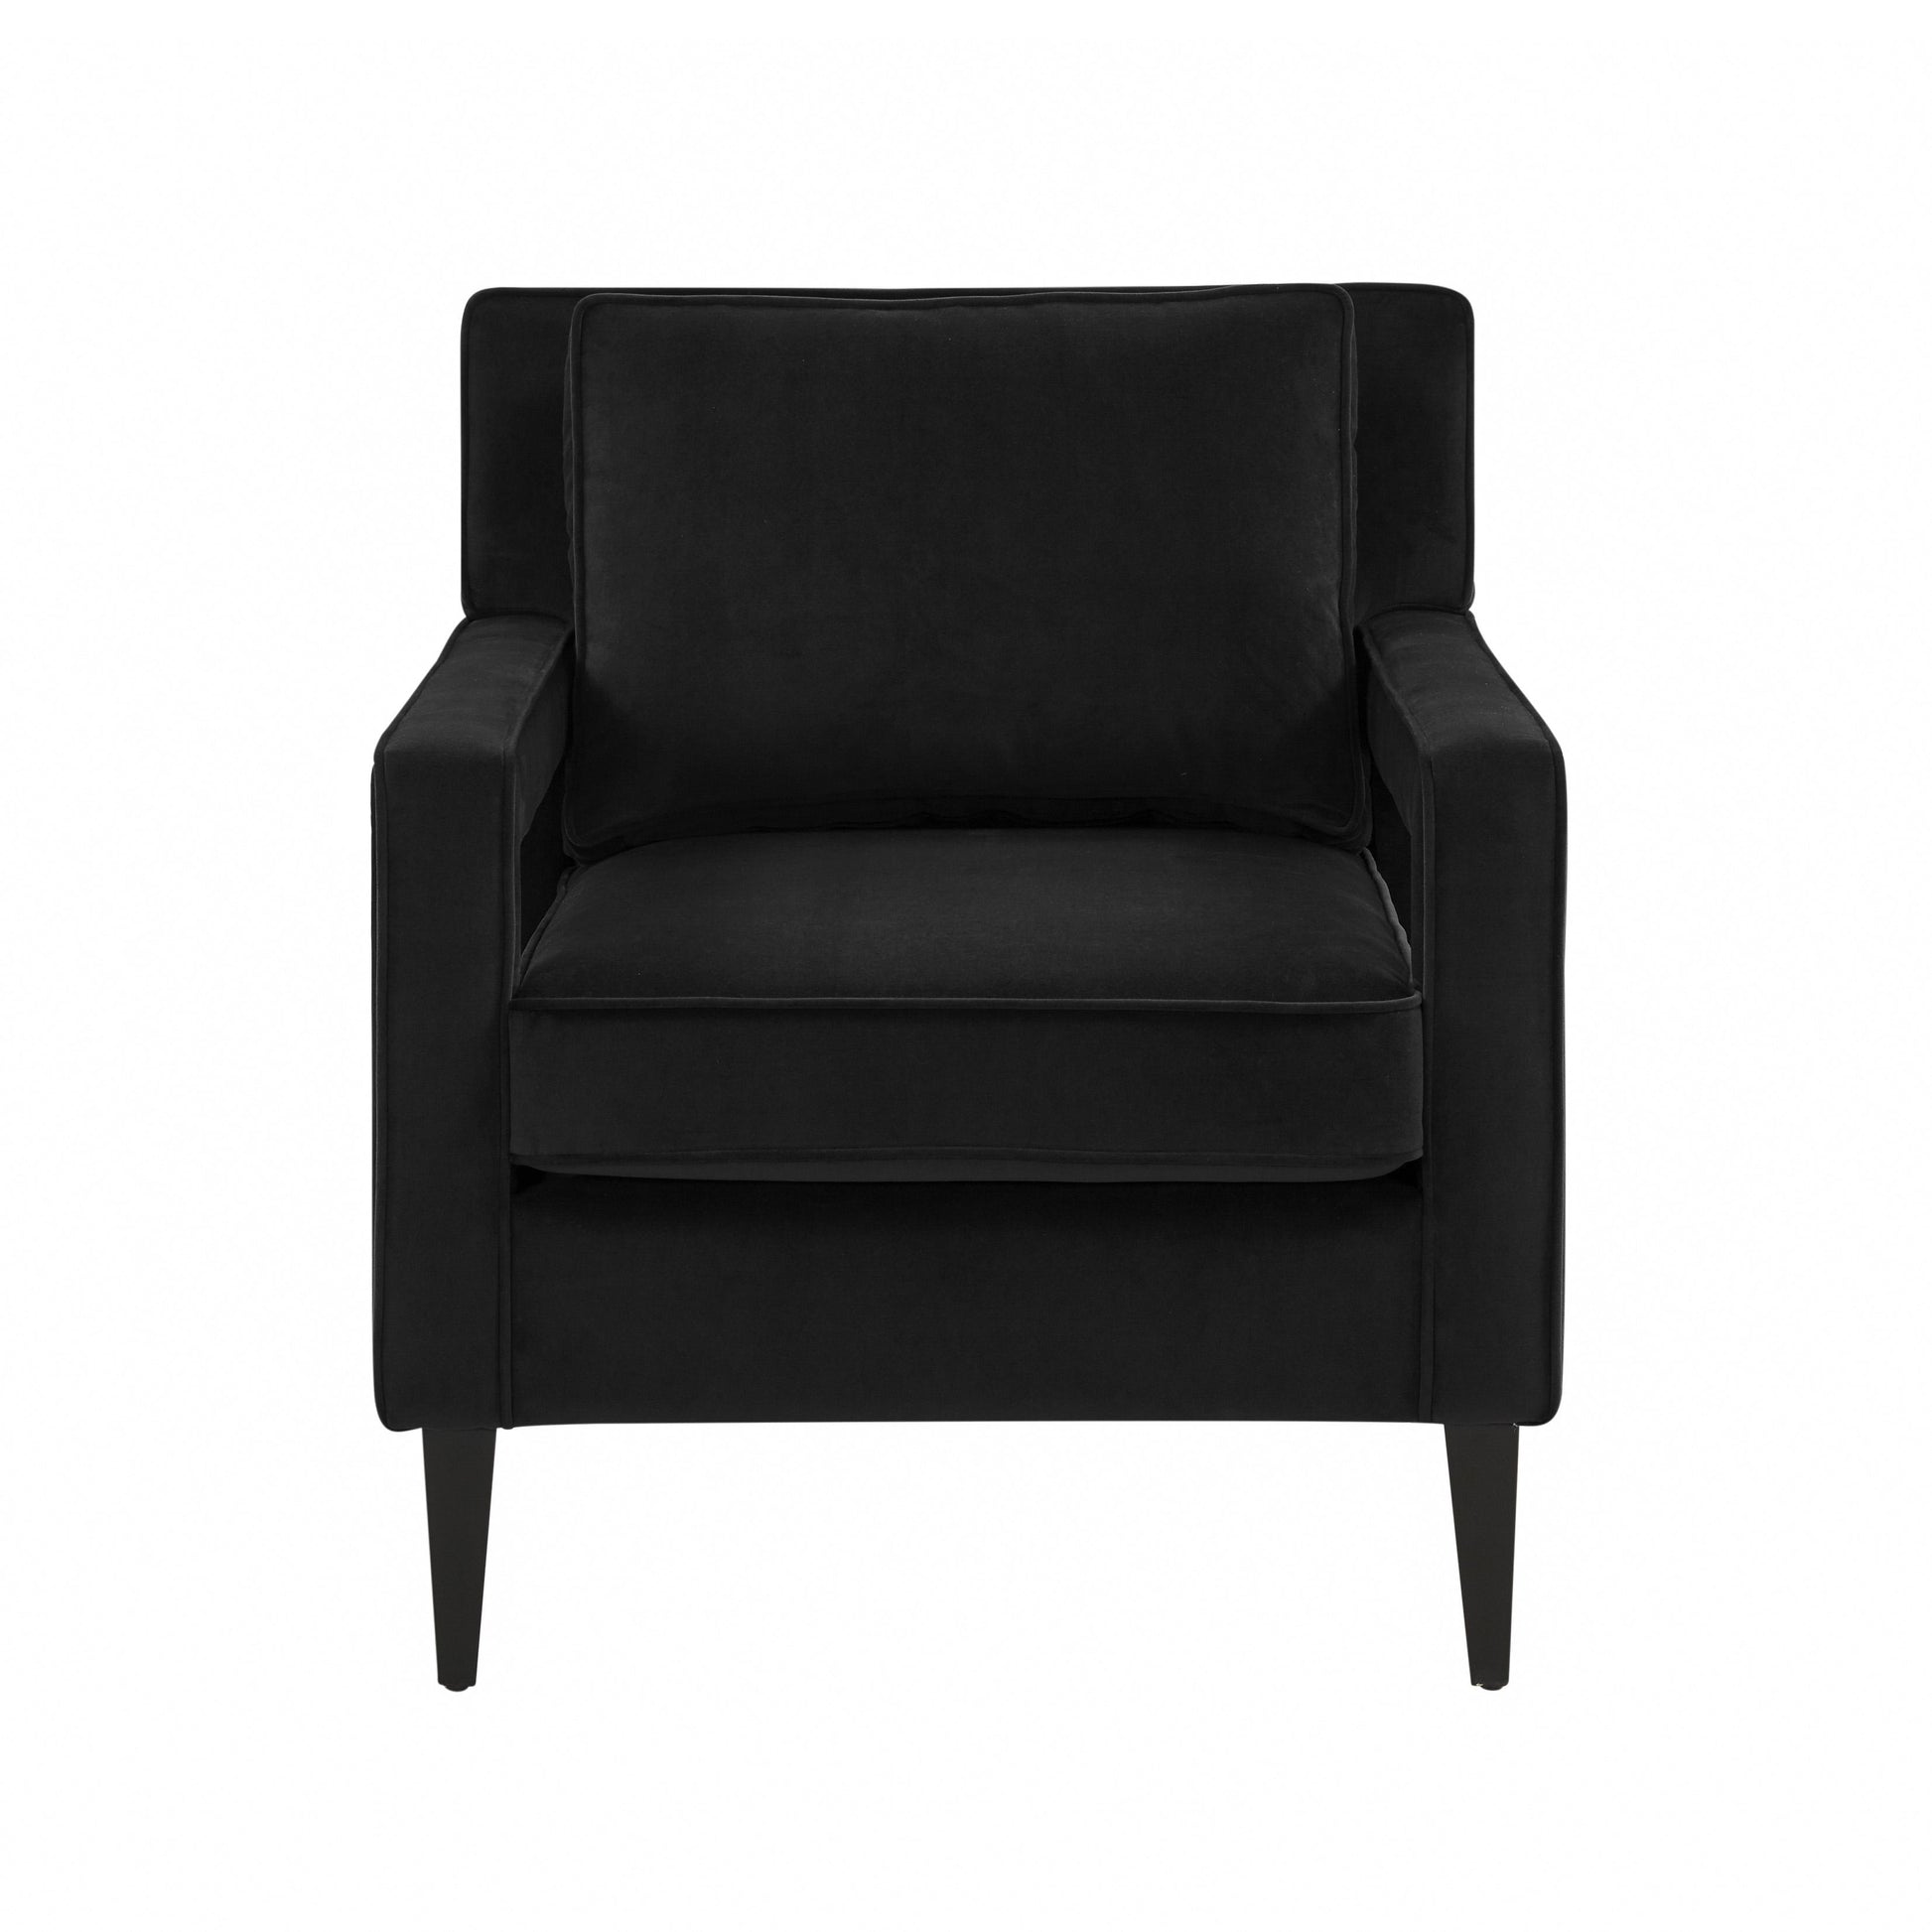 Tov Furniture Luna Onyx Black Accent Chair